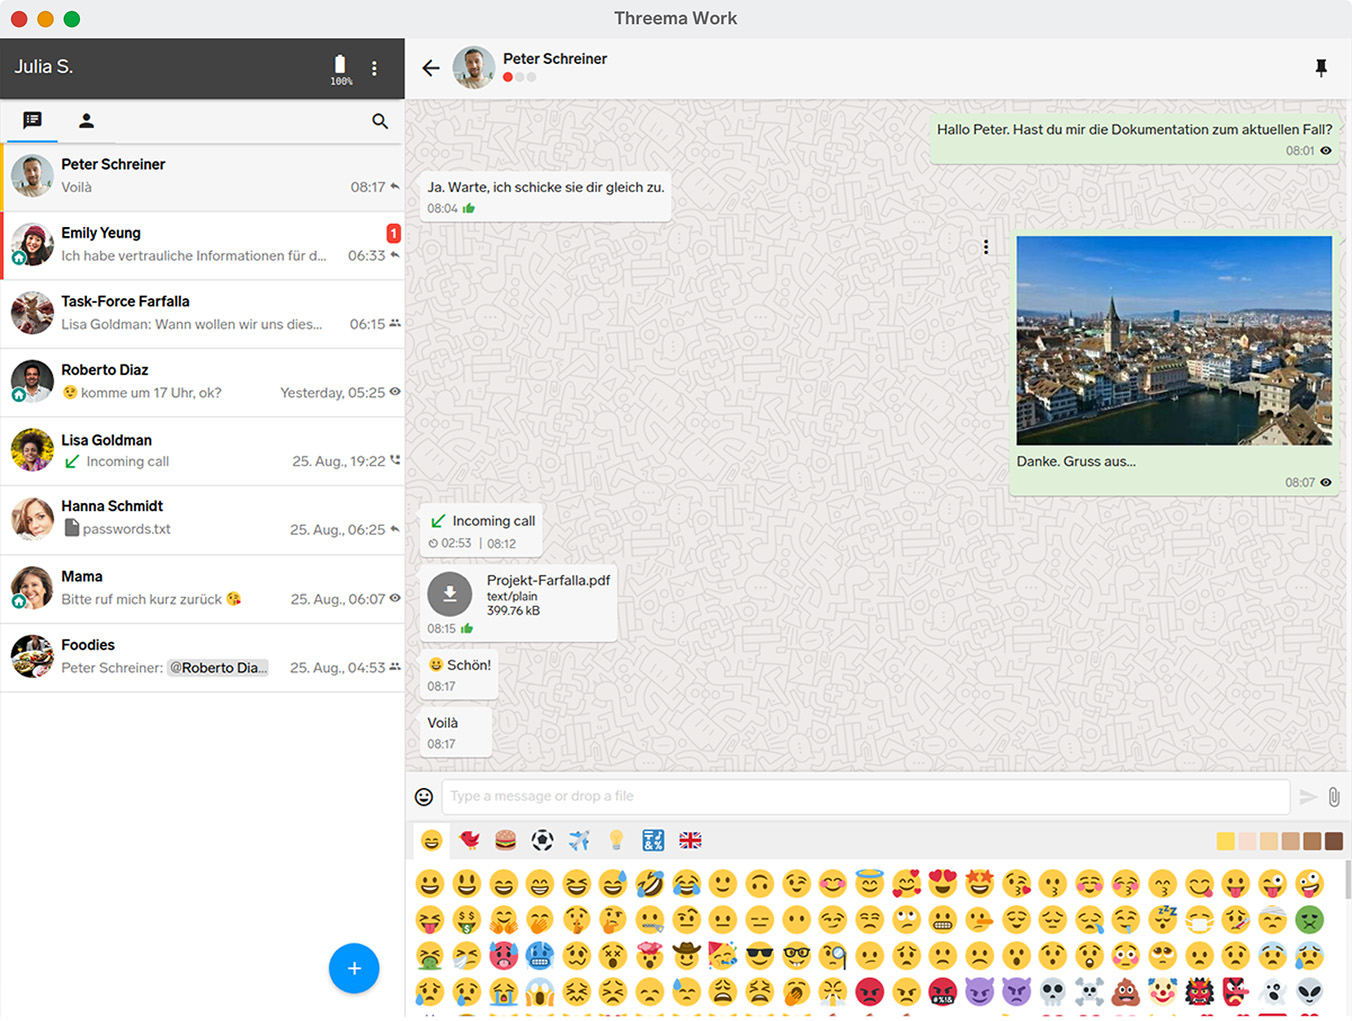 Chat-Übersicht der Desktop-Version des Business-Messengers Threema Work